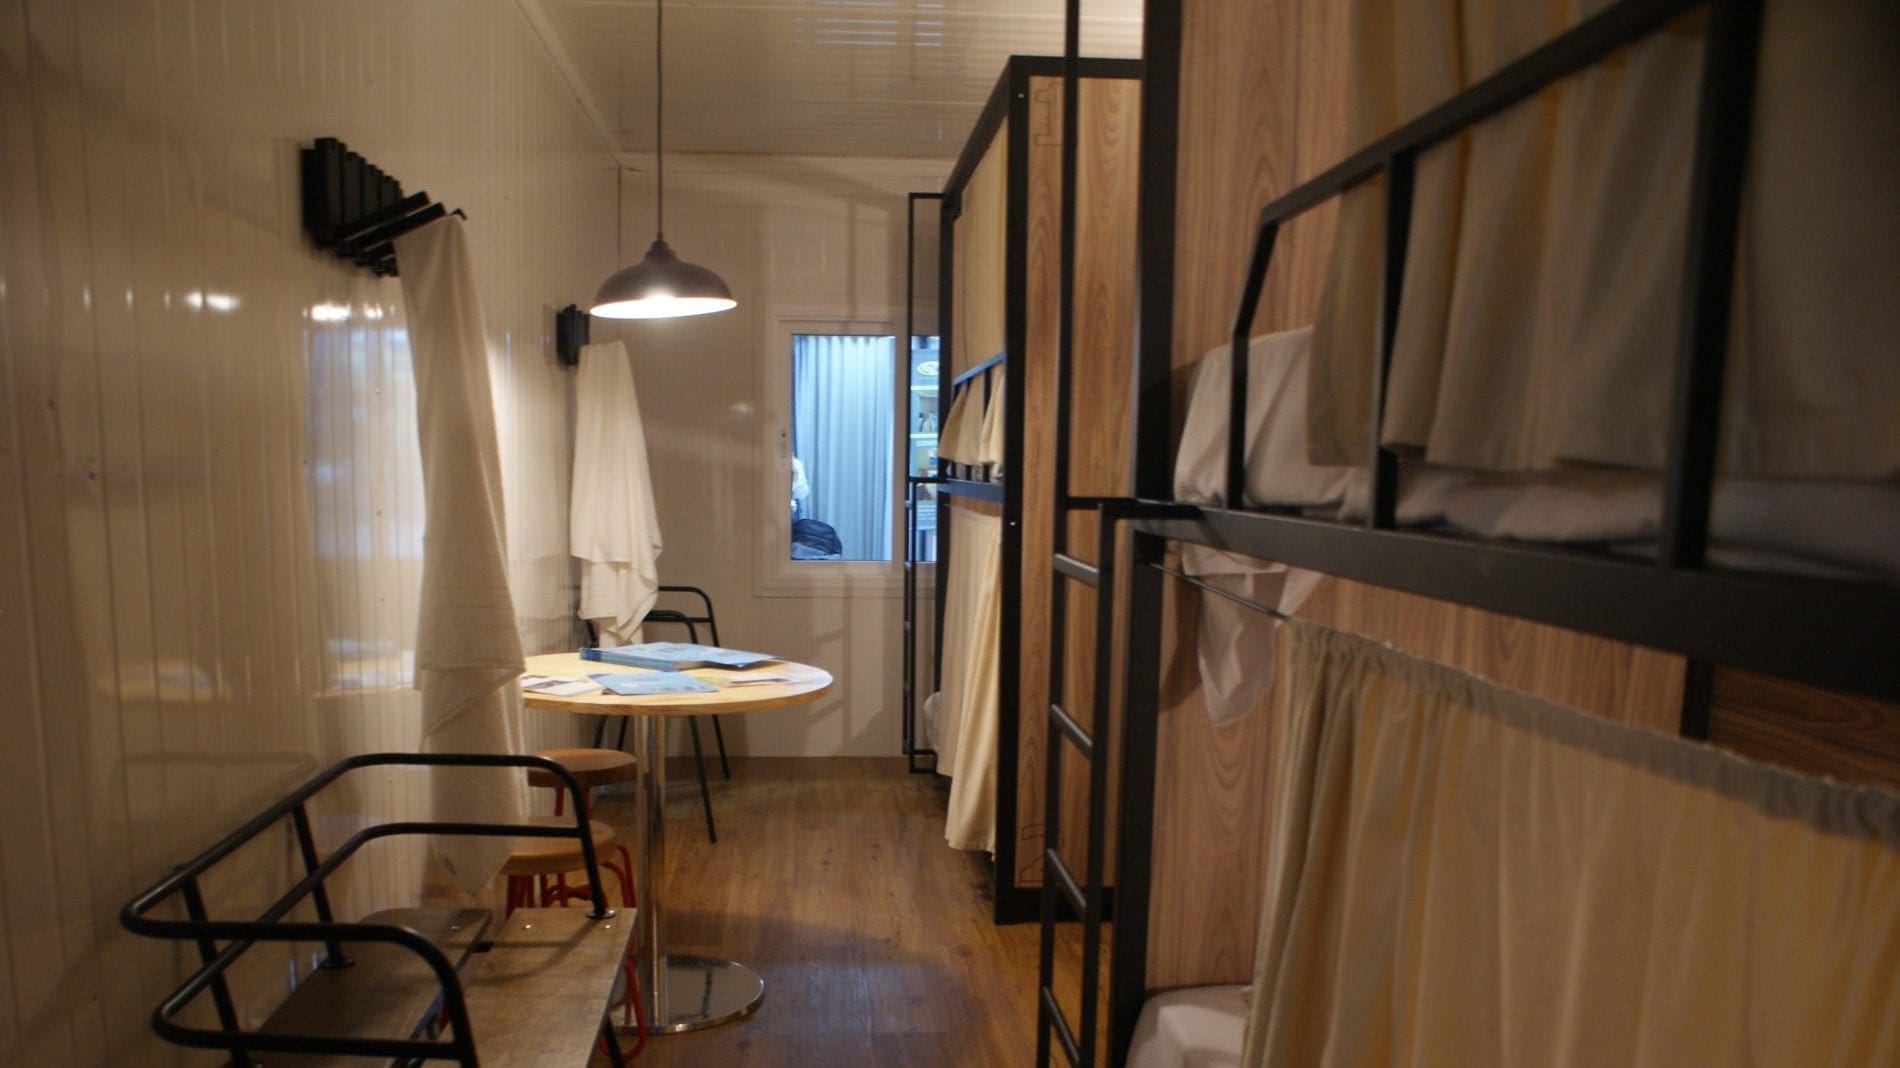 Hostels renovam hospedagem com conexão e portas